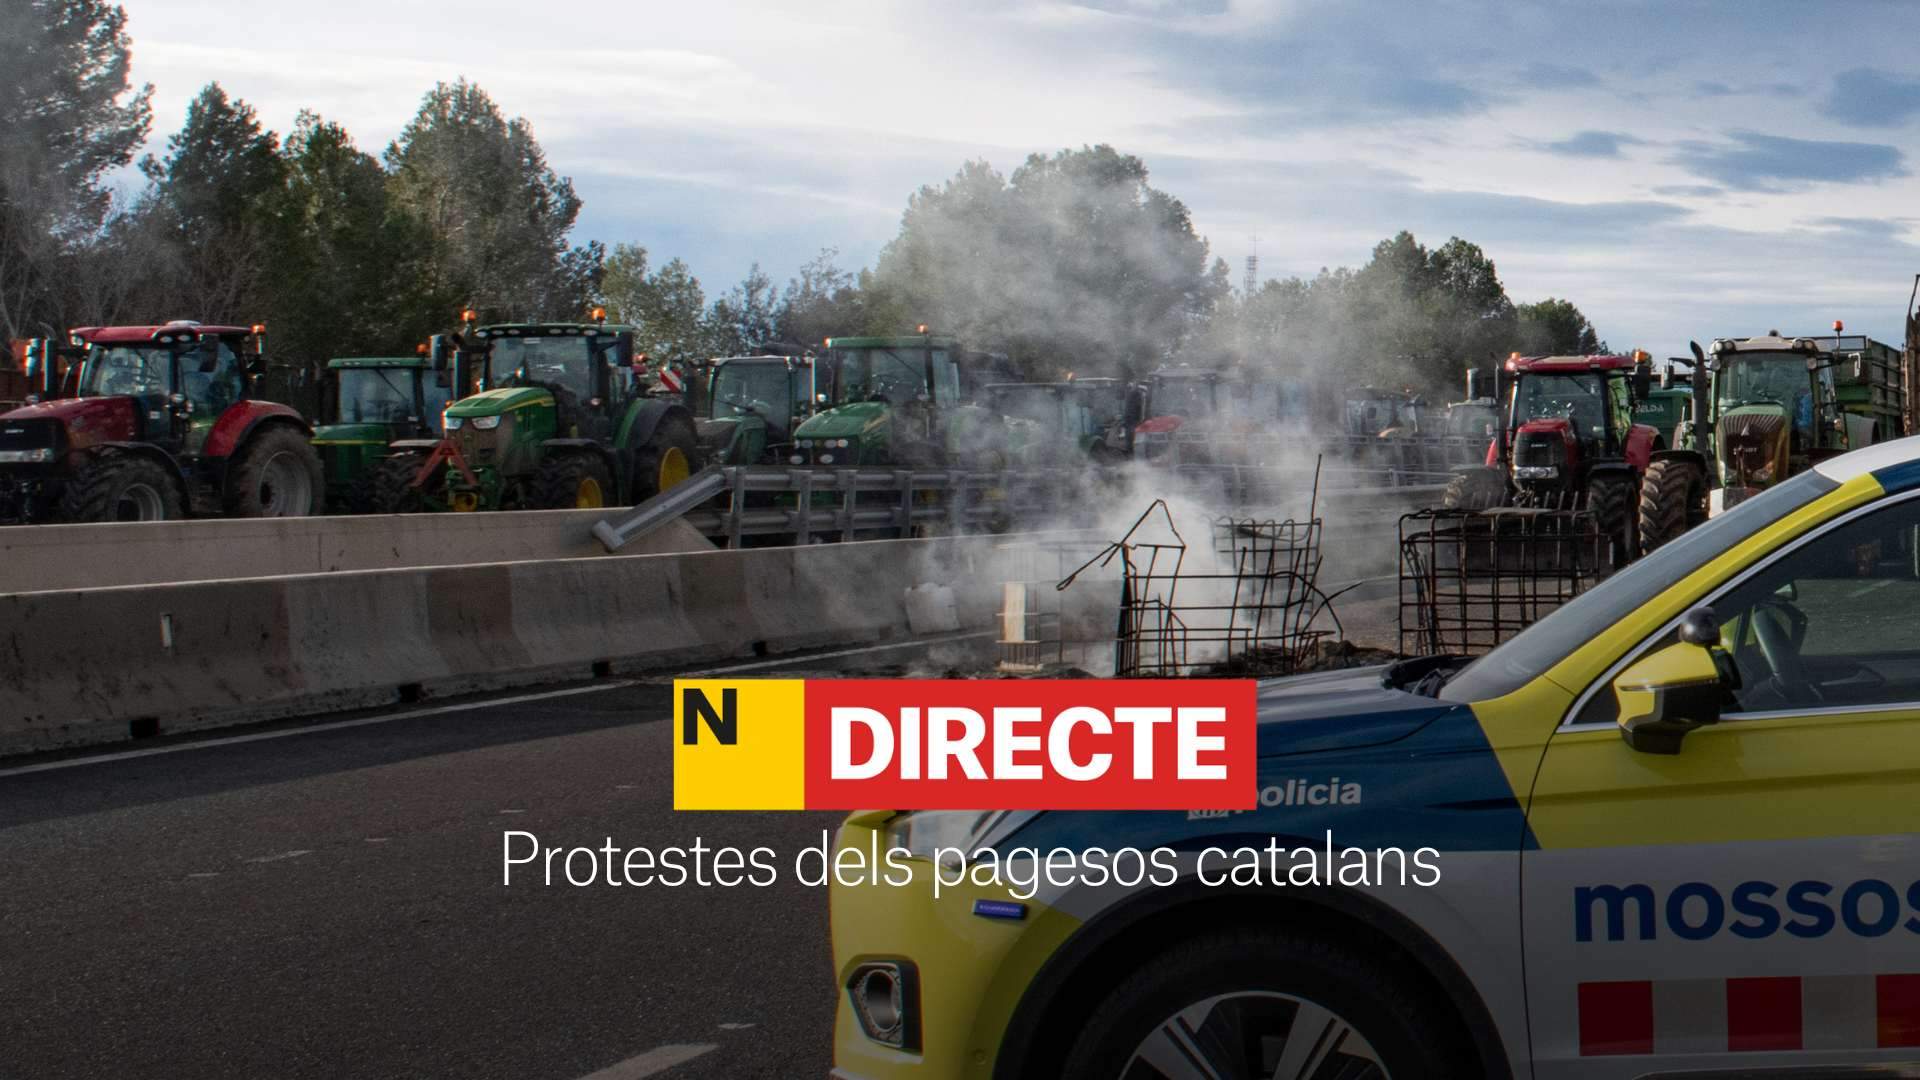 Protestes de pagesos a Catalunya, DIRECTE | Carreteres tallades avui, última hora